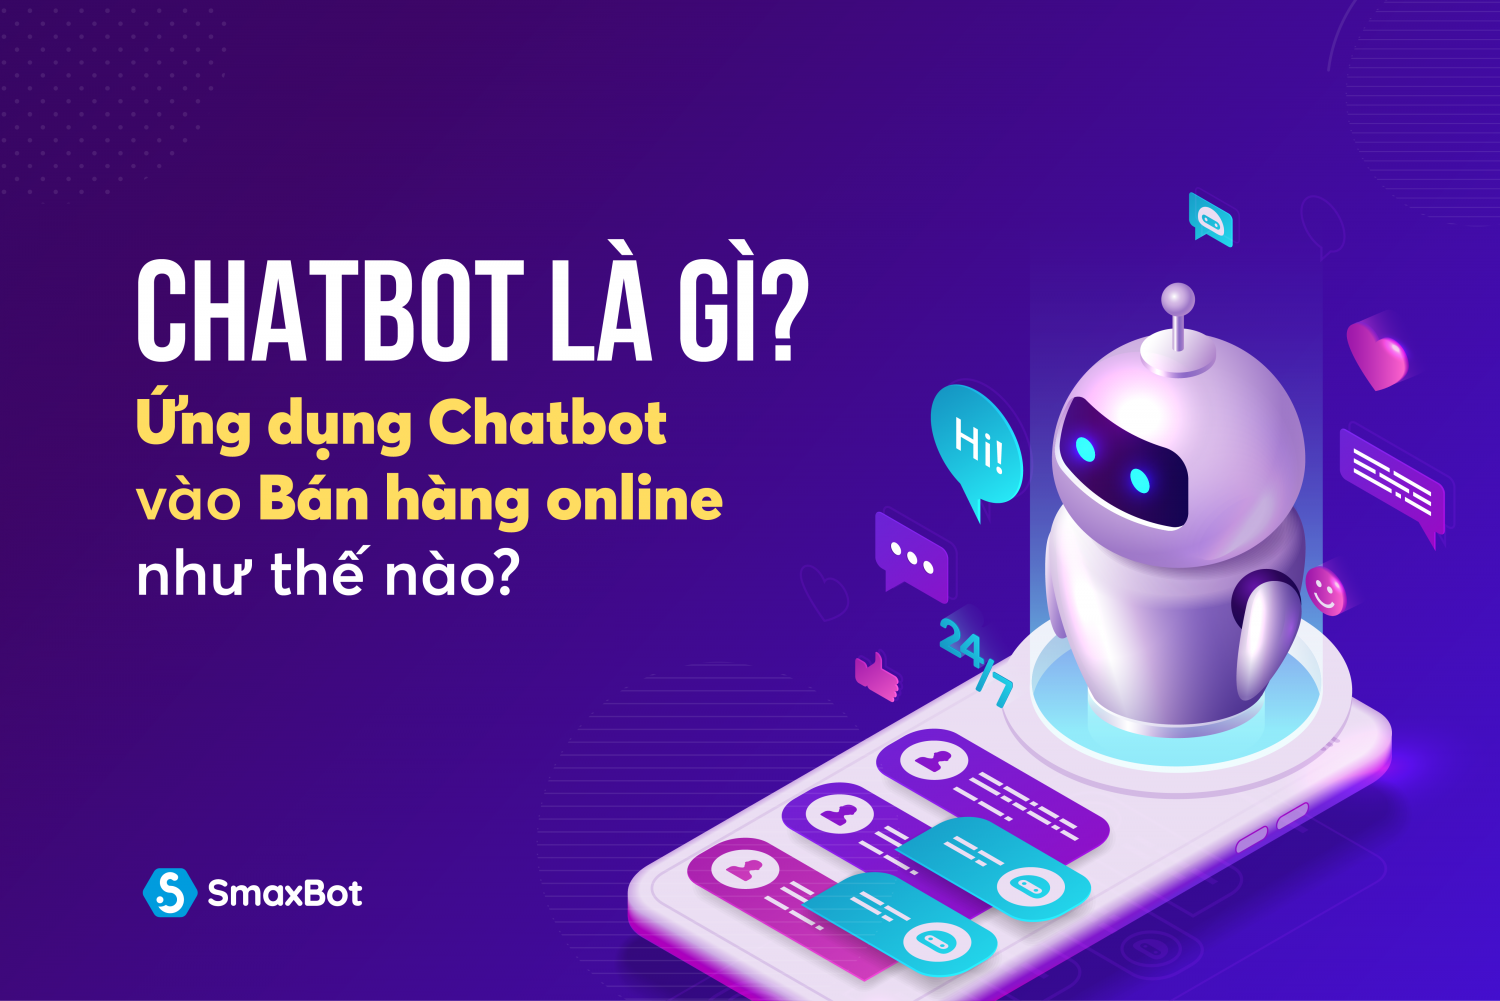 Chatbot là gì? Ứng dụng Chatbot vào bán hàng online như thế nào?